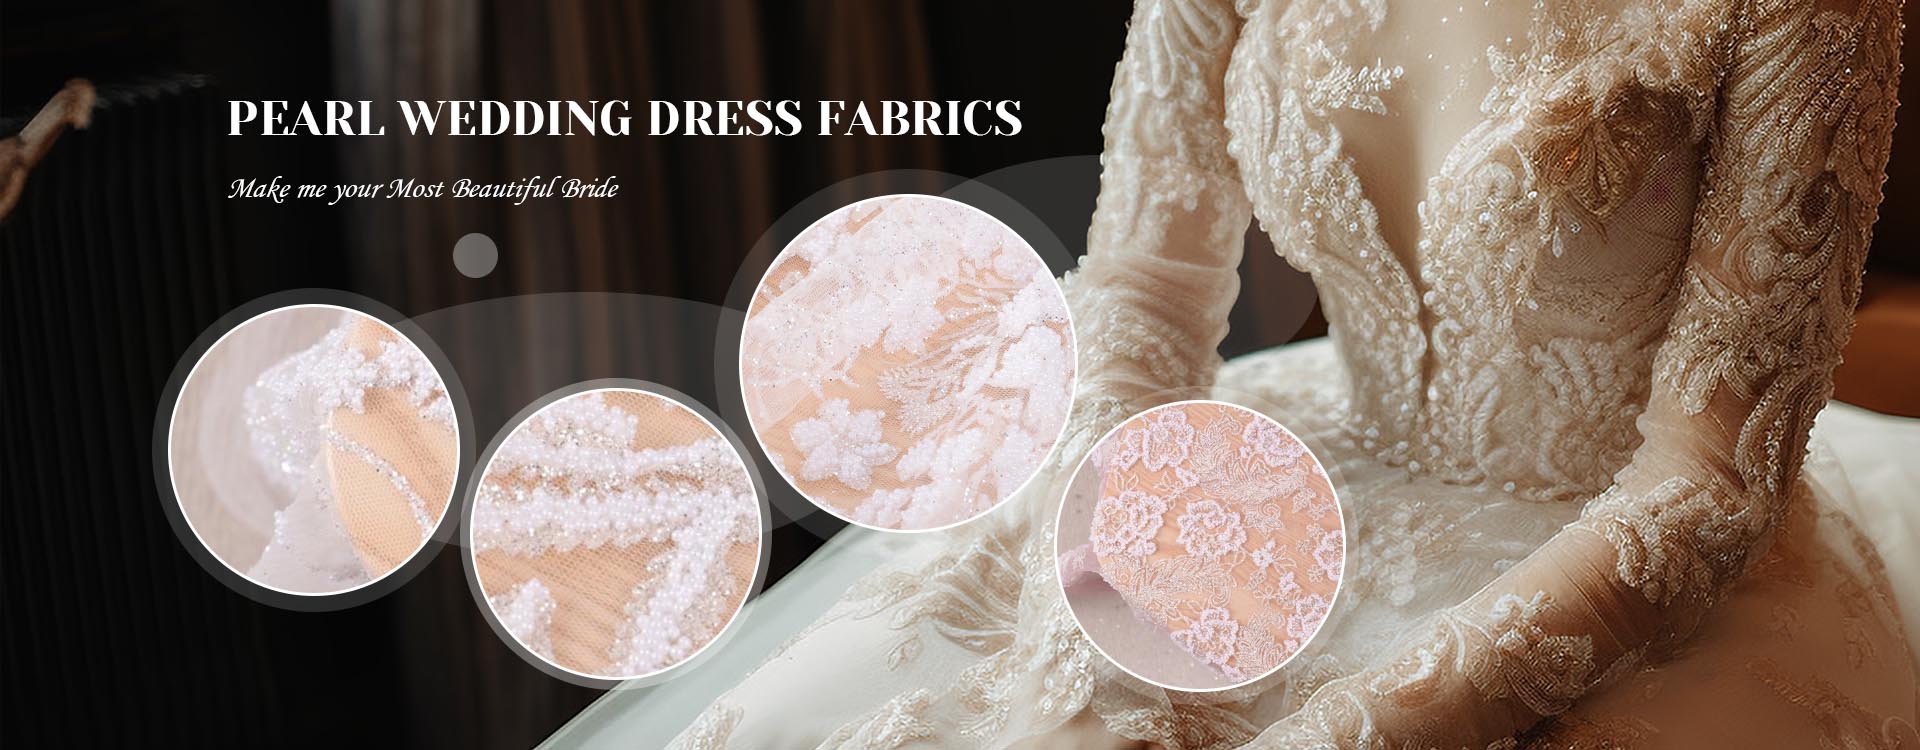 Hersteller von Stoffen für Hochzeitskleider in China